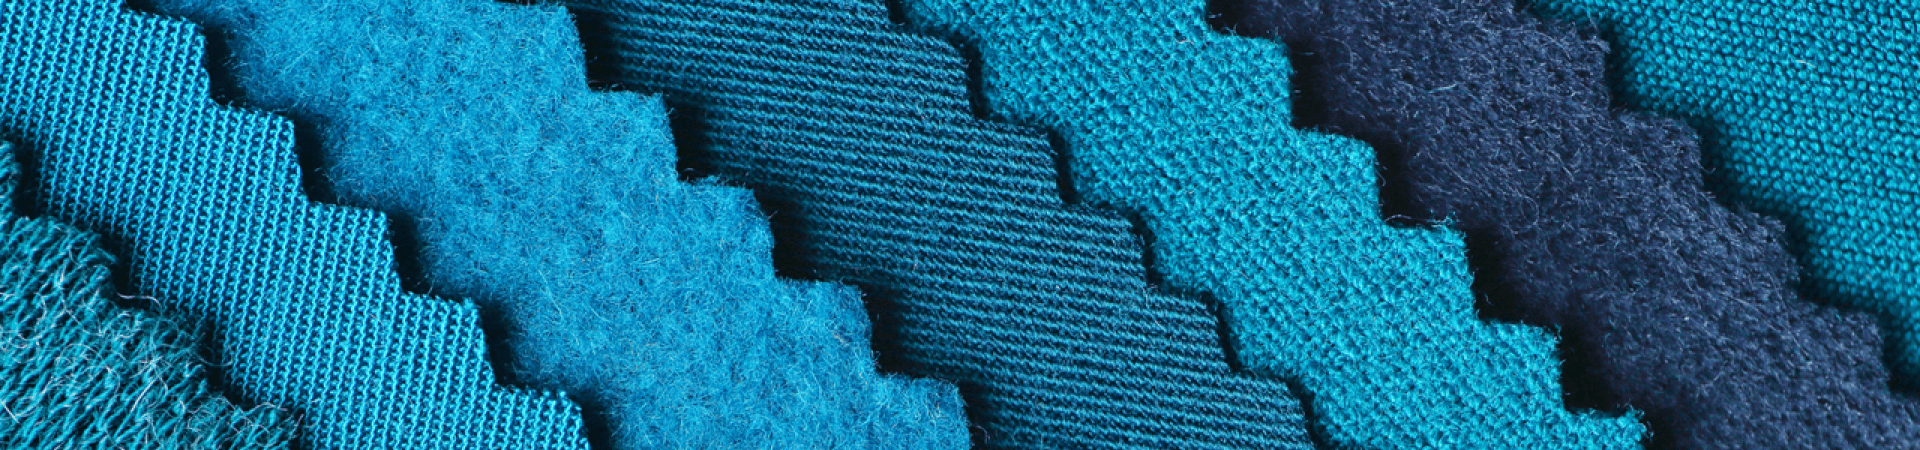 blue textiles